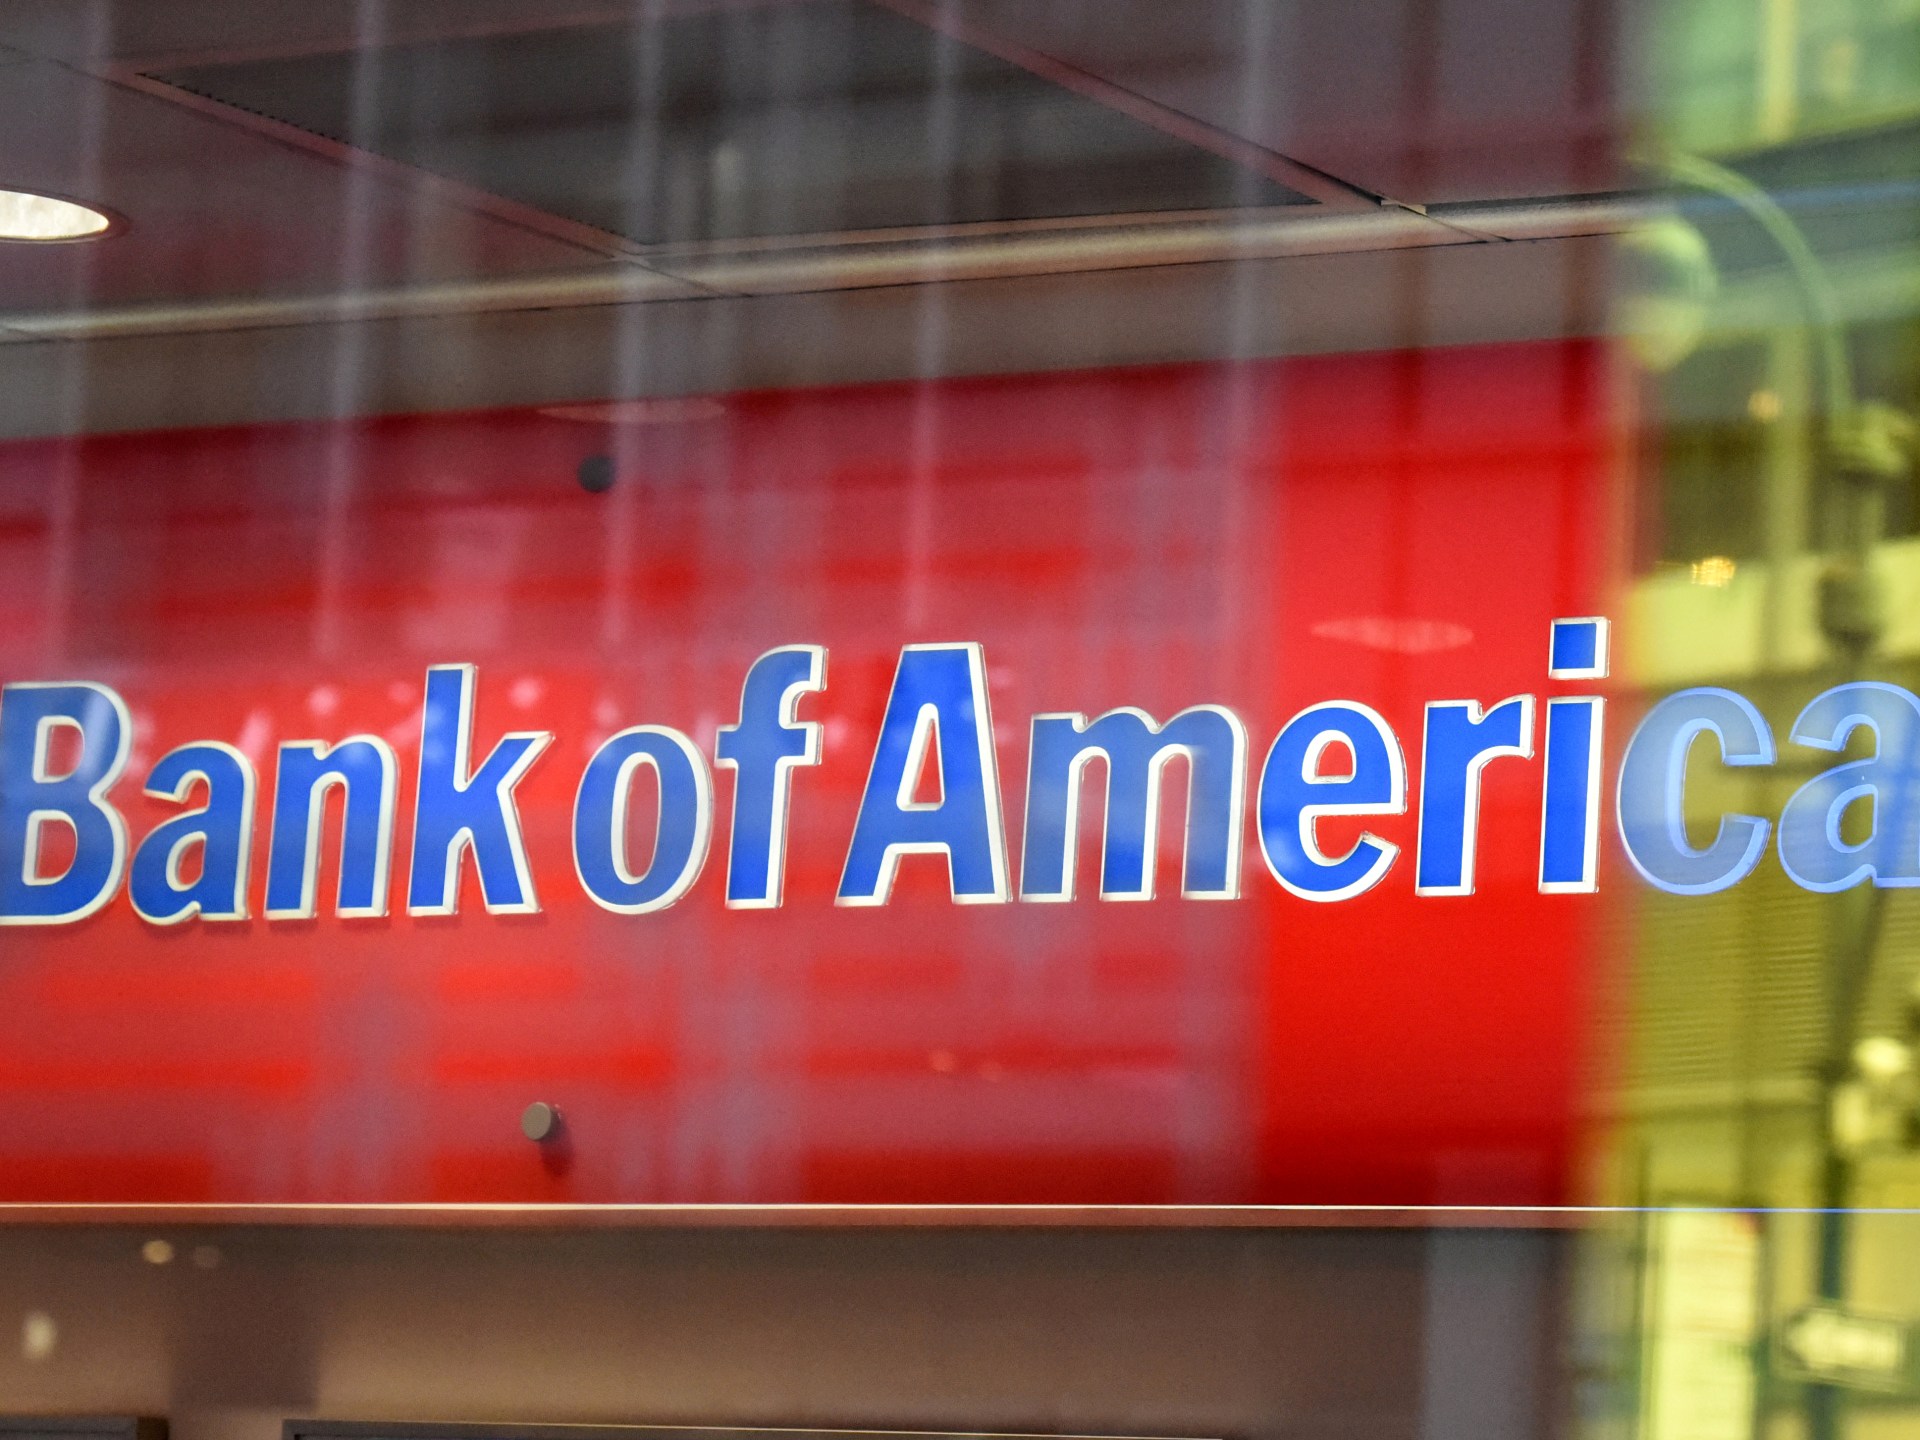 Bank of America didenda 0 juta atas biaya sampah, masalah lainnya |  Berita Bank